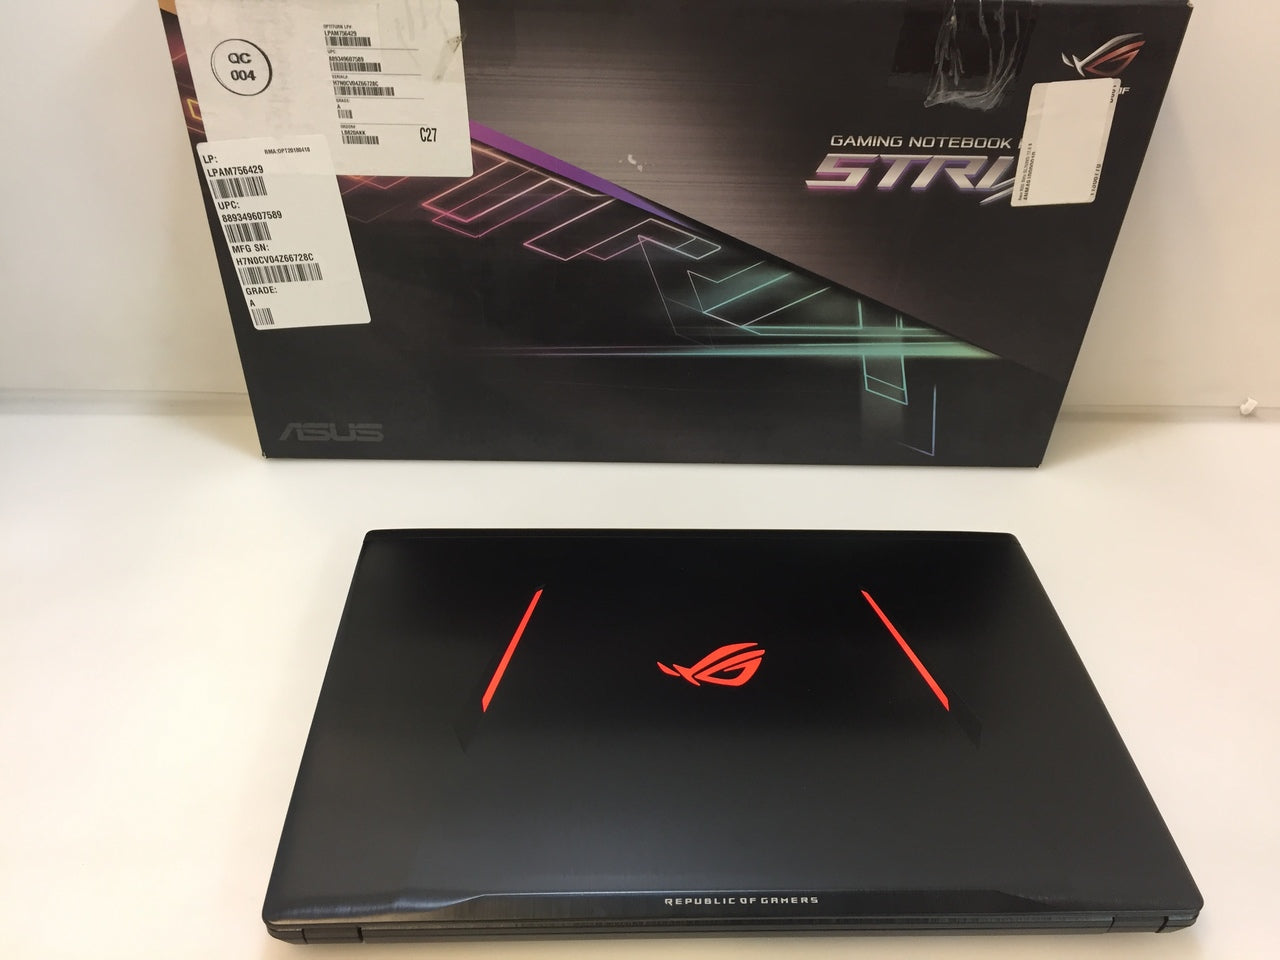 Laptop Asus ROG Strix GL753VD-DS71 17.3